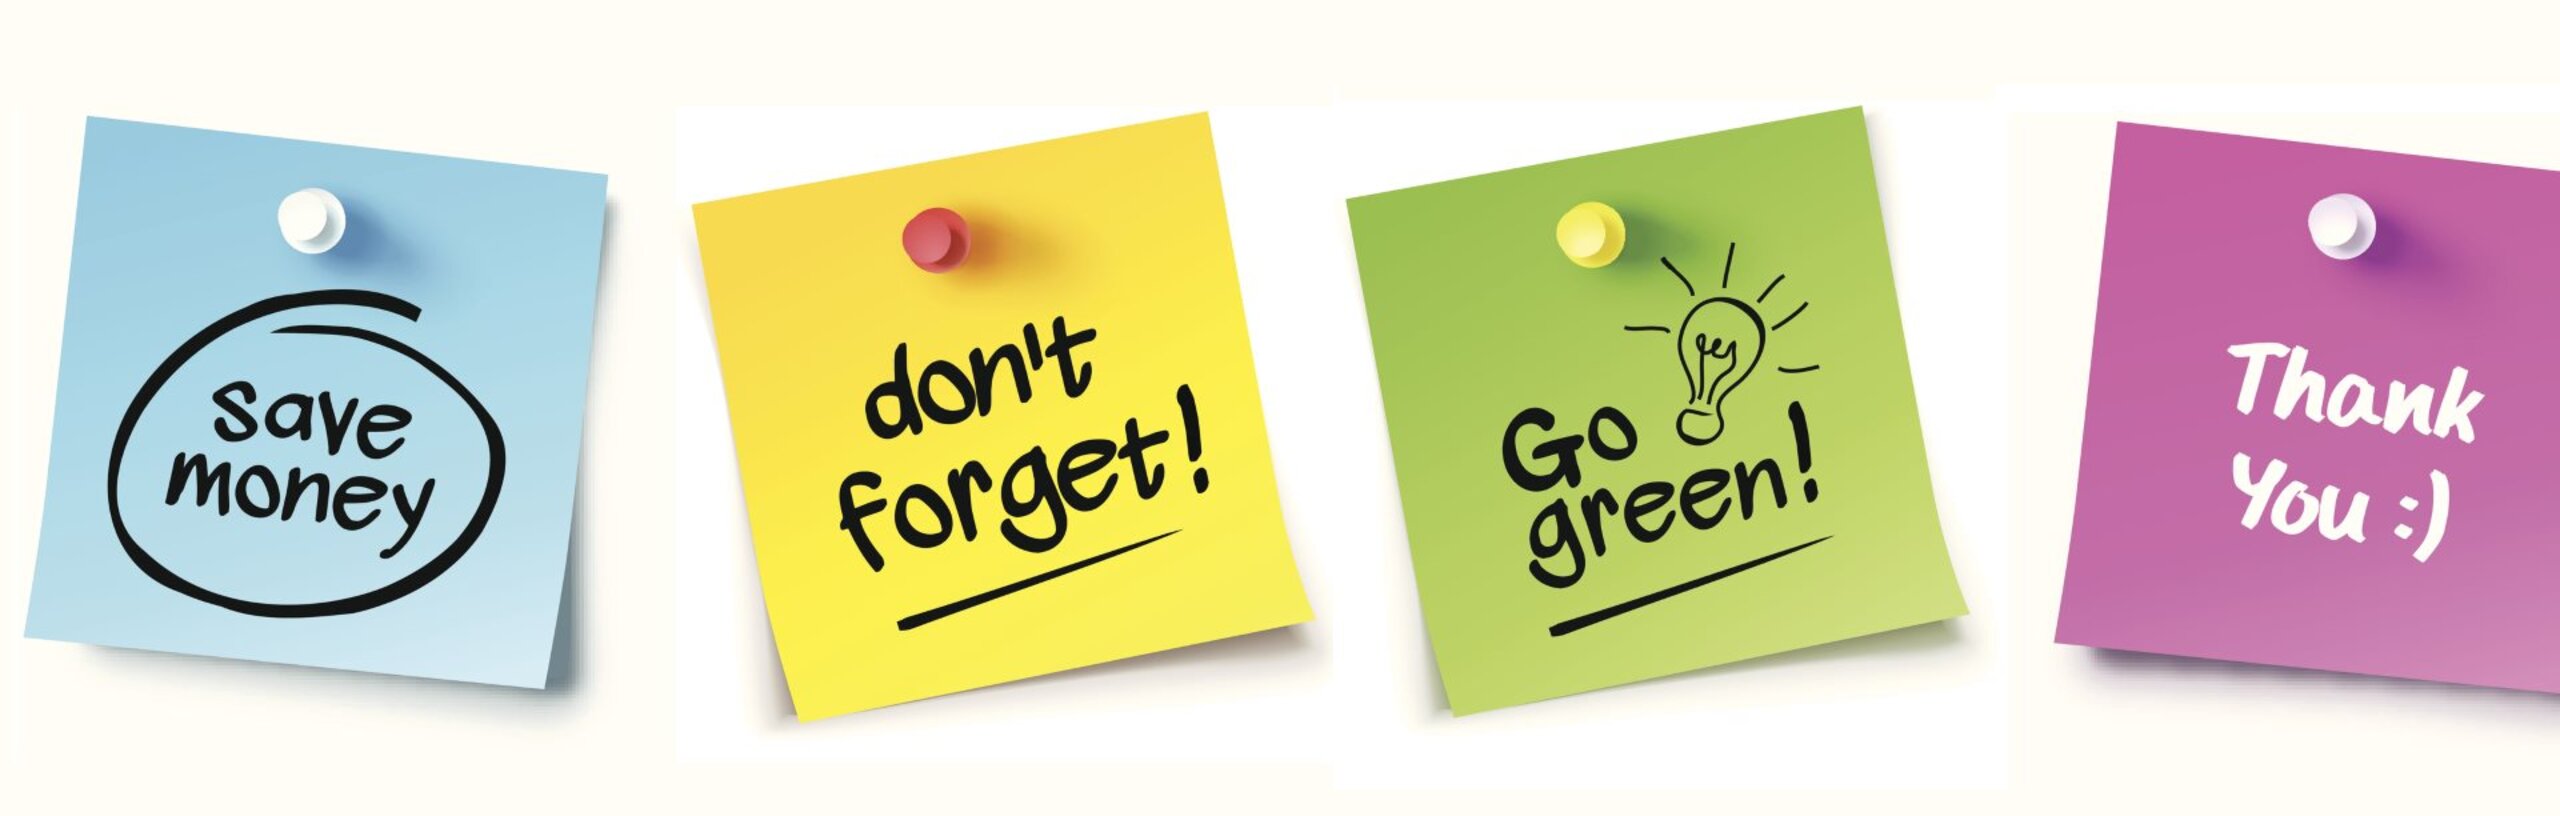 Vier Post-its in verschiedenen Farben mit den Textteilen: Don't forget, save money, go green, thank you!